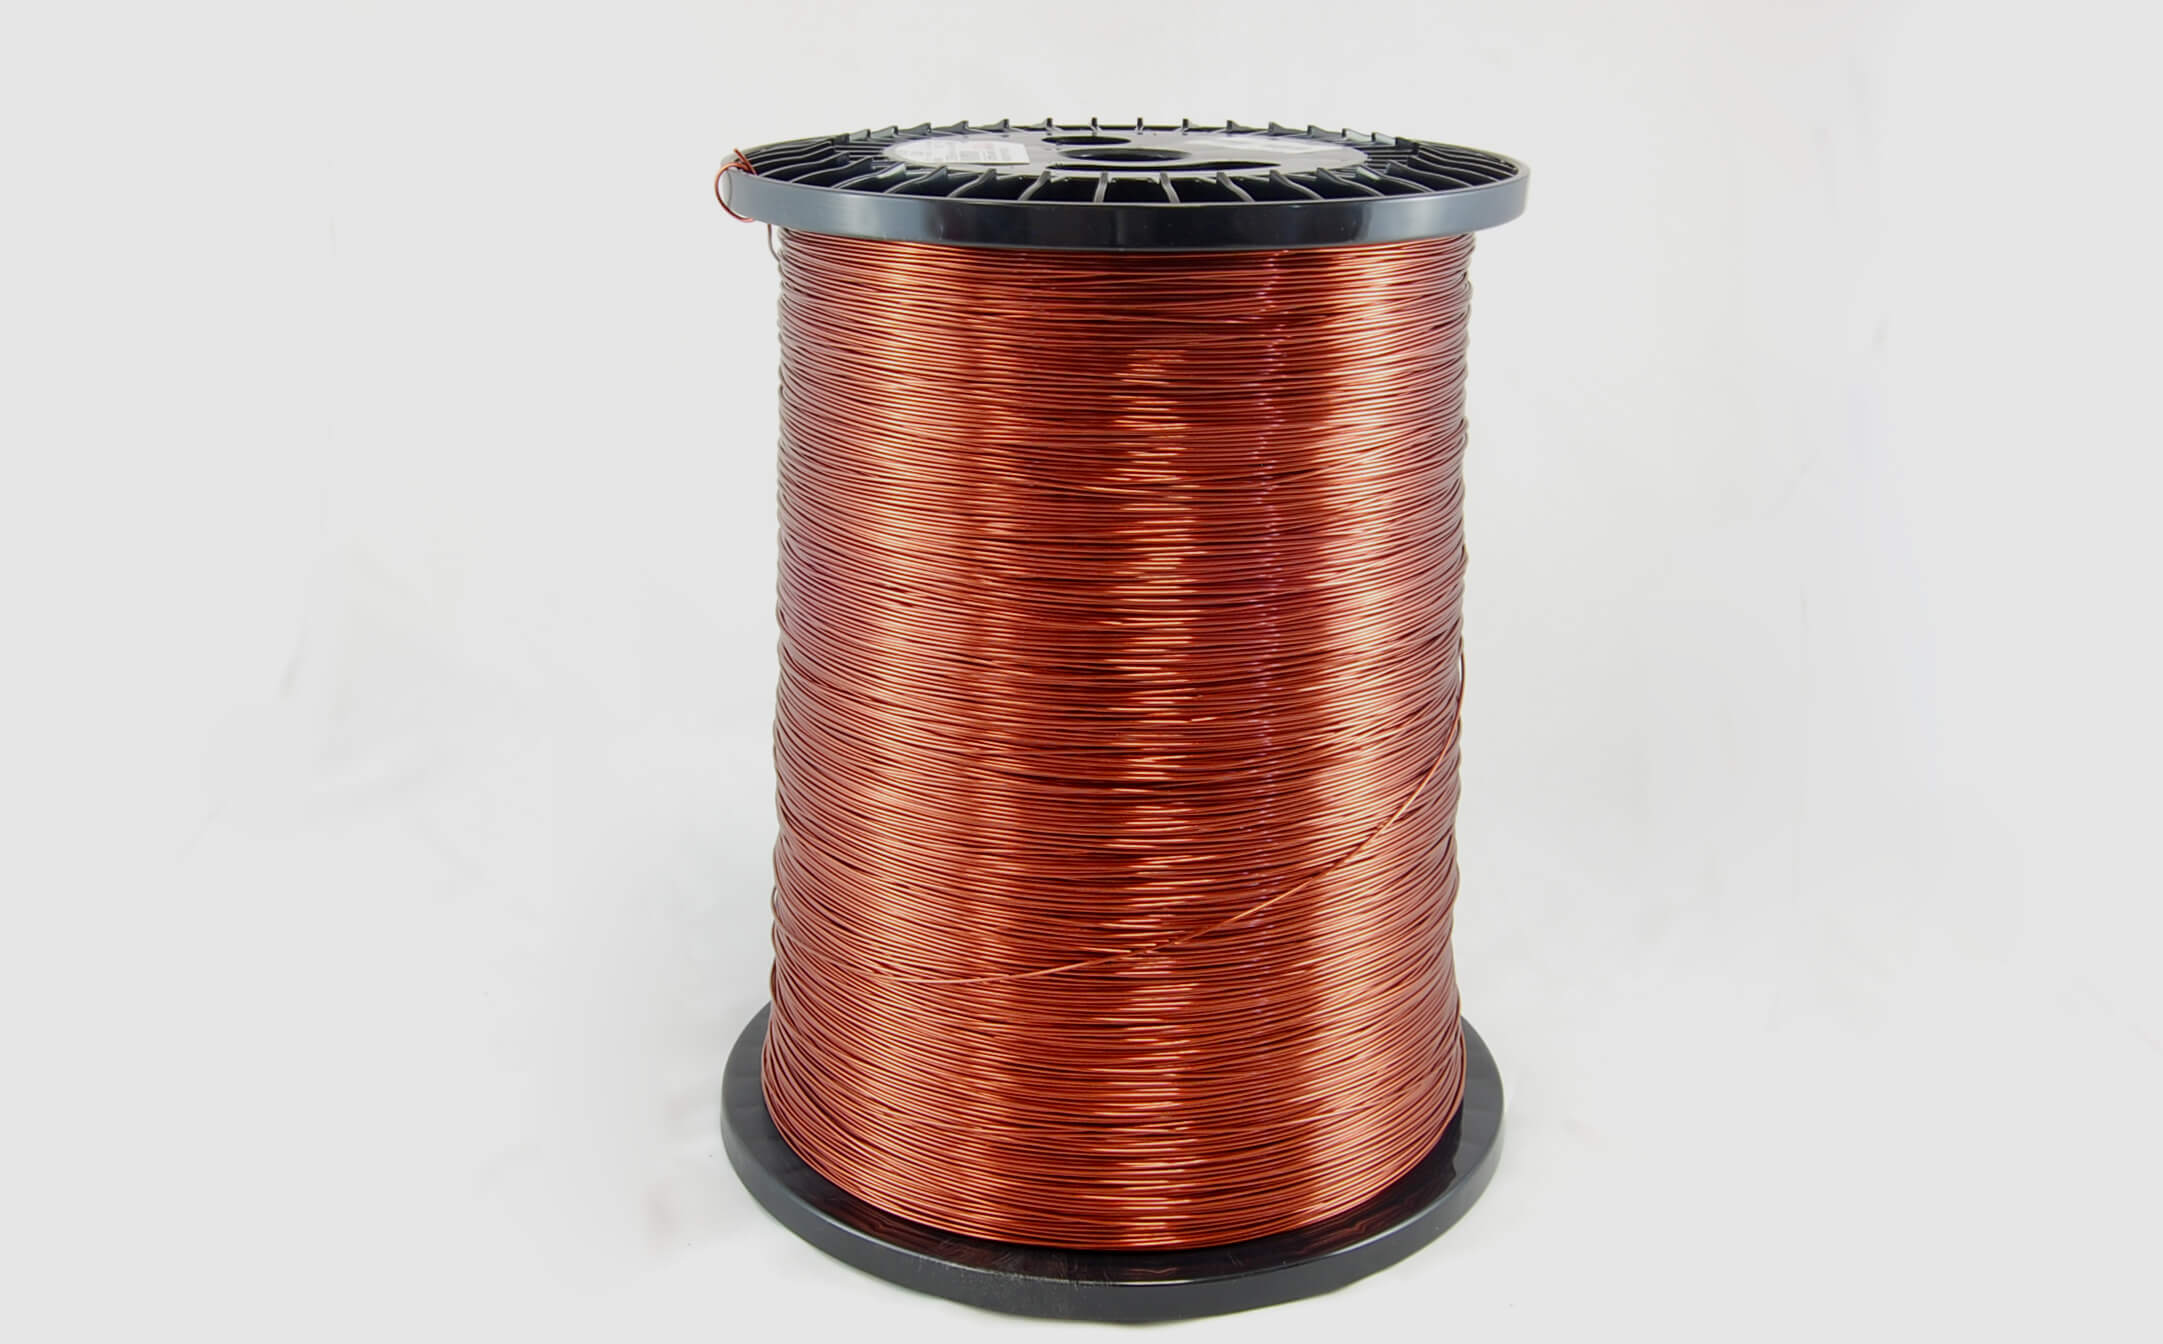 #26 Heavy Super Hyslik 200 Round HTAIH MW 35 Copper Magnet Wire 200°C, copper, 85 LB pail (average wght.)